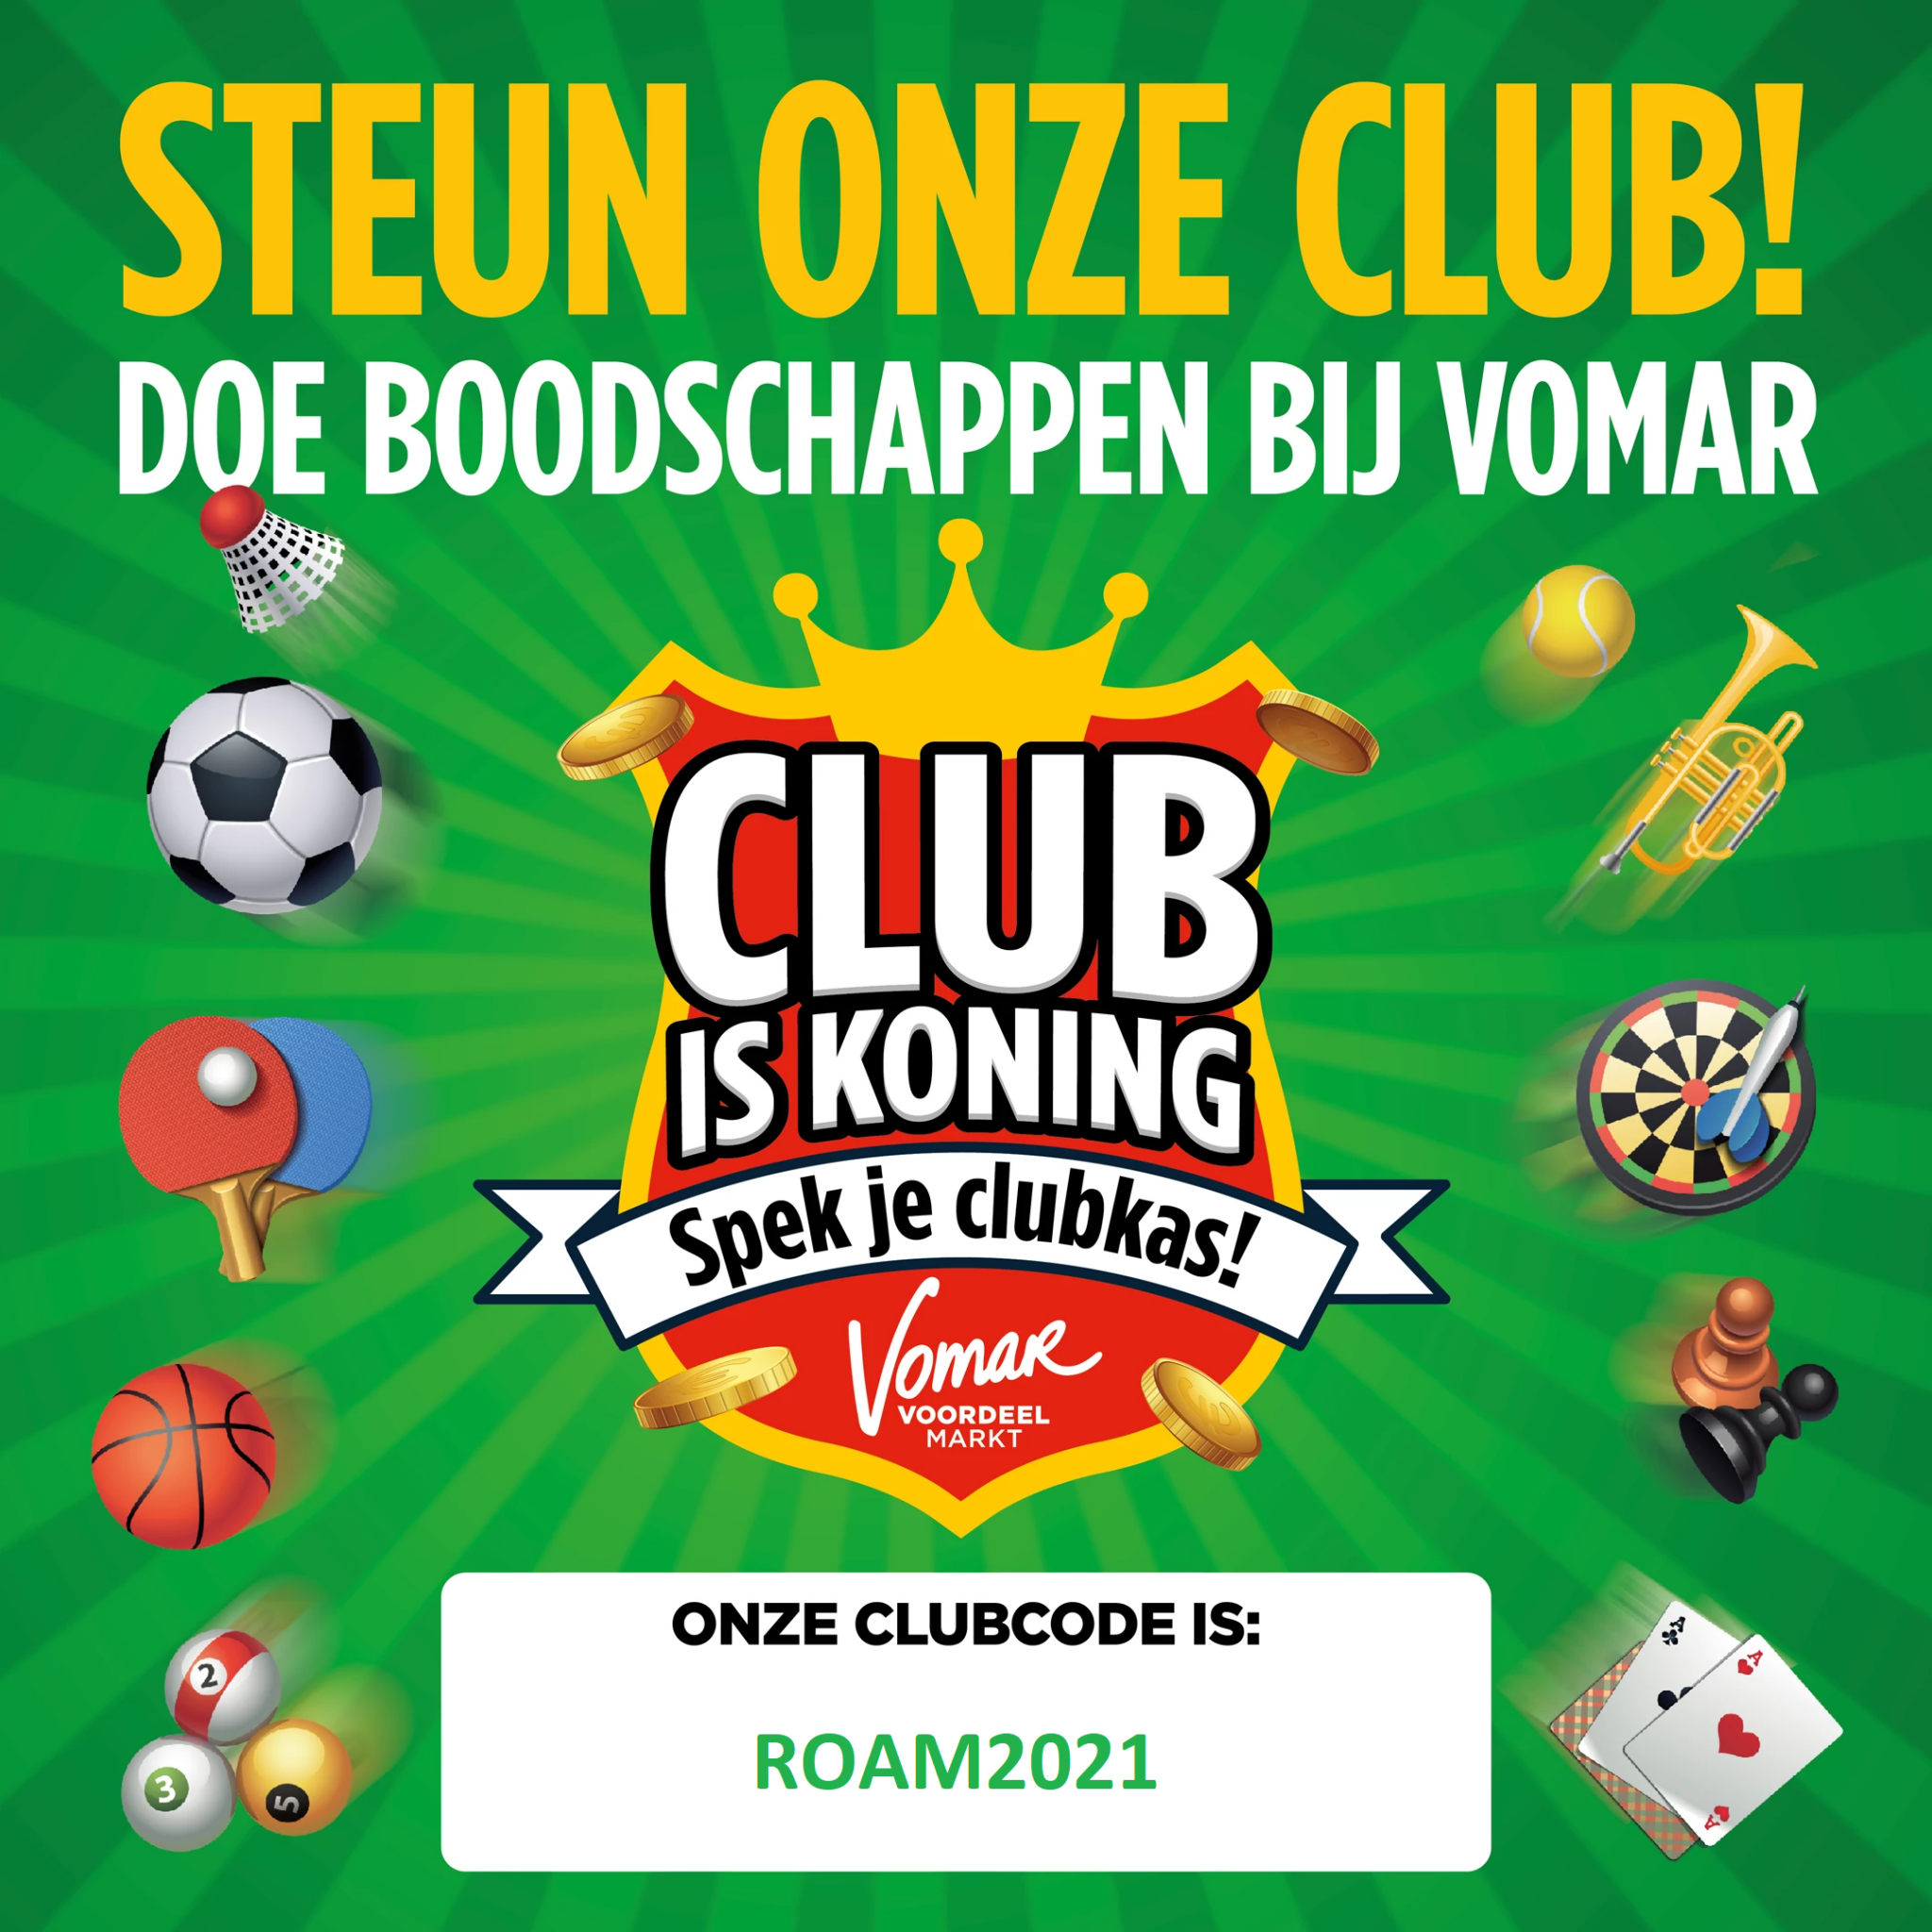 Spek de clubkas met Club is Koning sparen van Vomar!